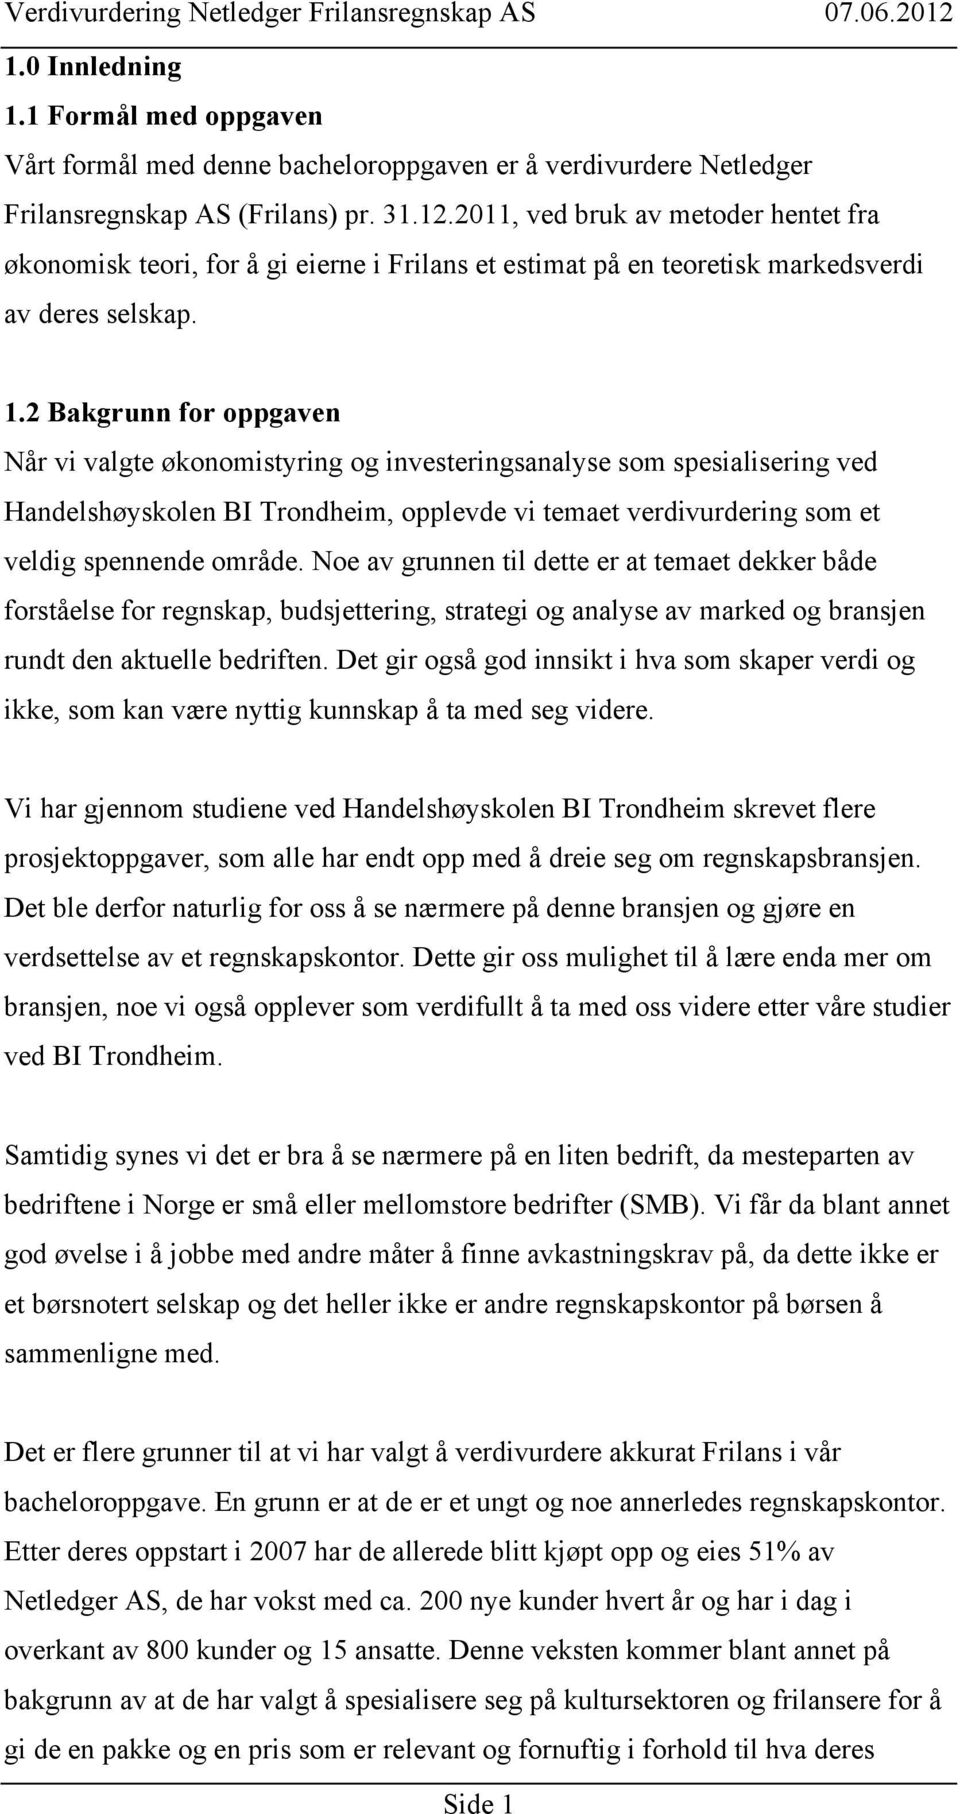 2 Bakgrunn for oppgaven Når vi valgte økonomistyring og investeringsanalyse som spesialisering ved Handelshøyskolen BI Trondheim, opplevde vi temaet verdivurdering som et veldig spennende område.